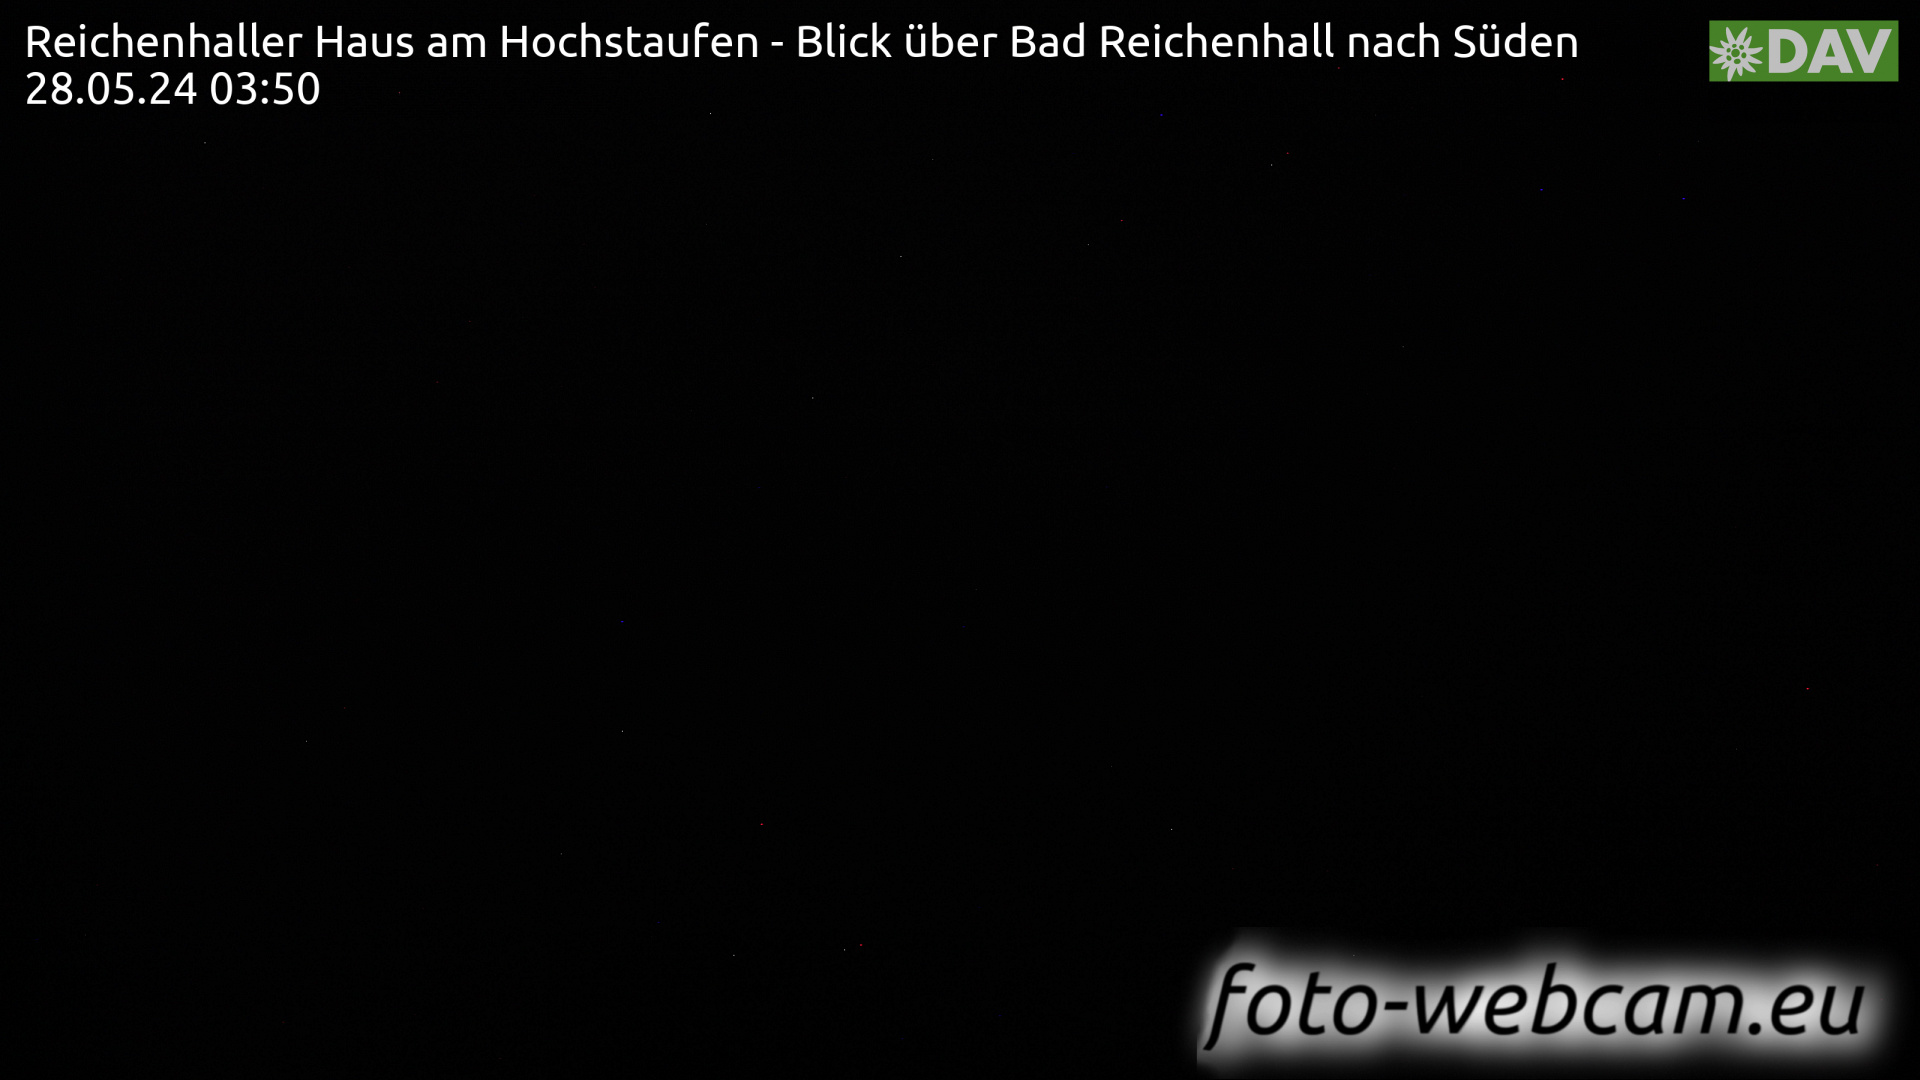 Bad Reichenhall Mar. 03:55